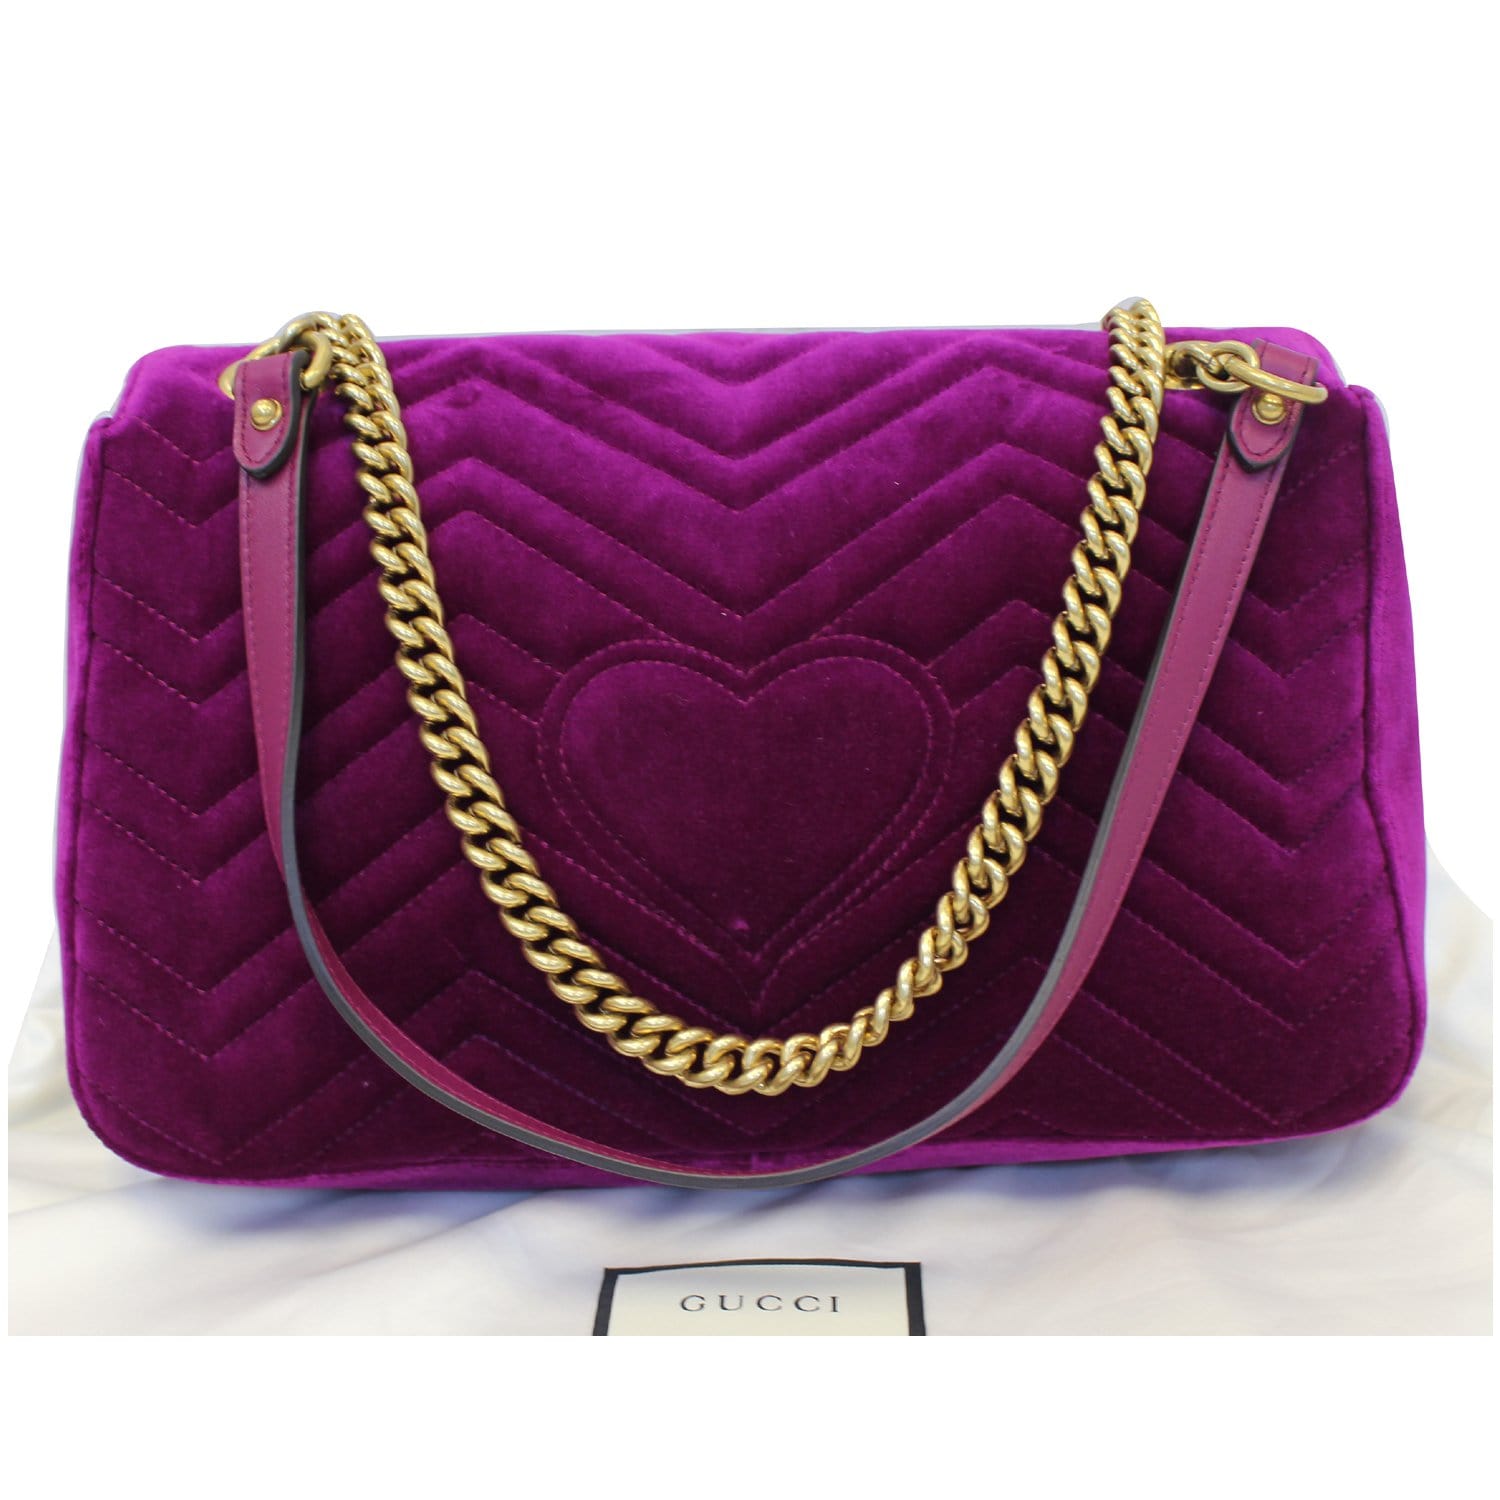 Gg marmont chain flap velvet crossbody bag Gucci Purple in Velvet - 31192992